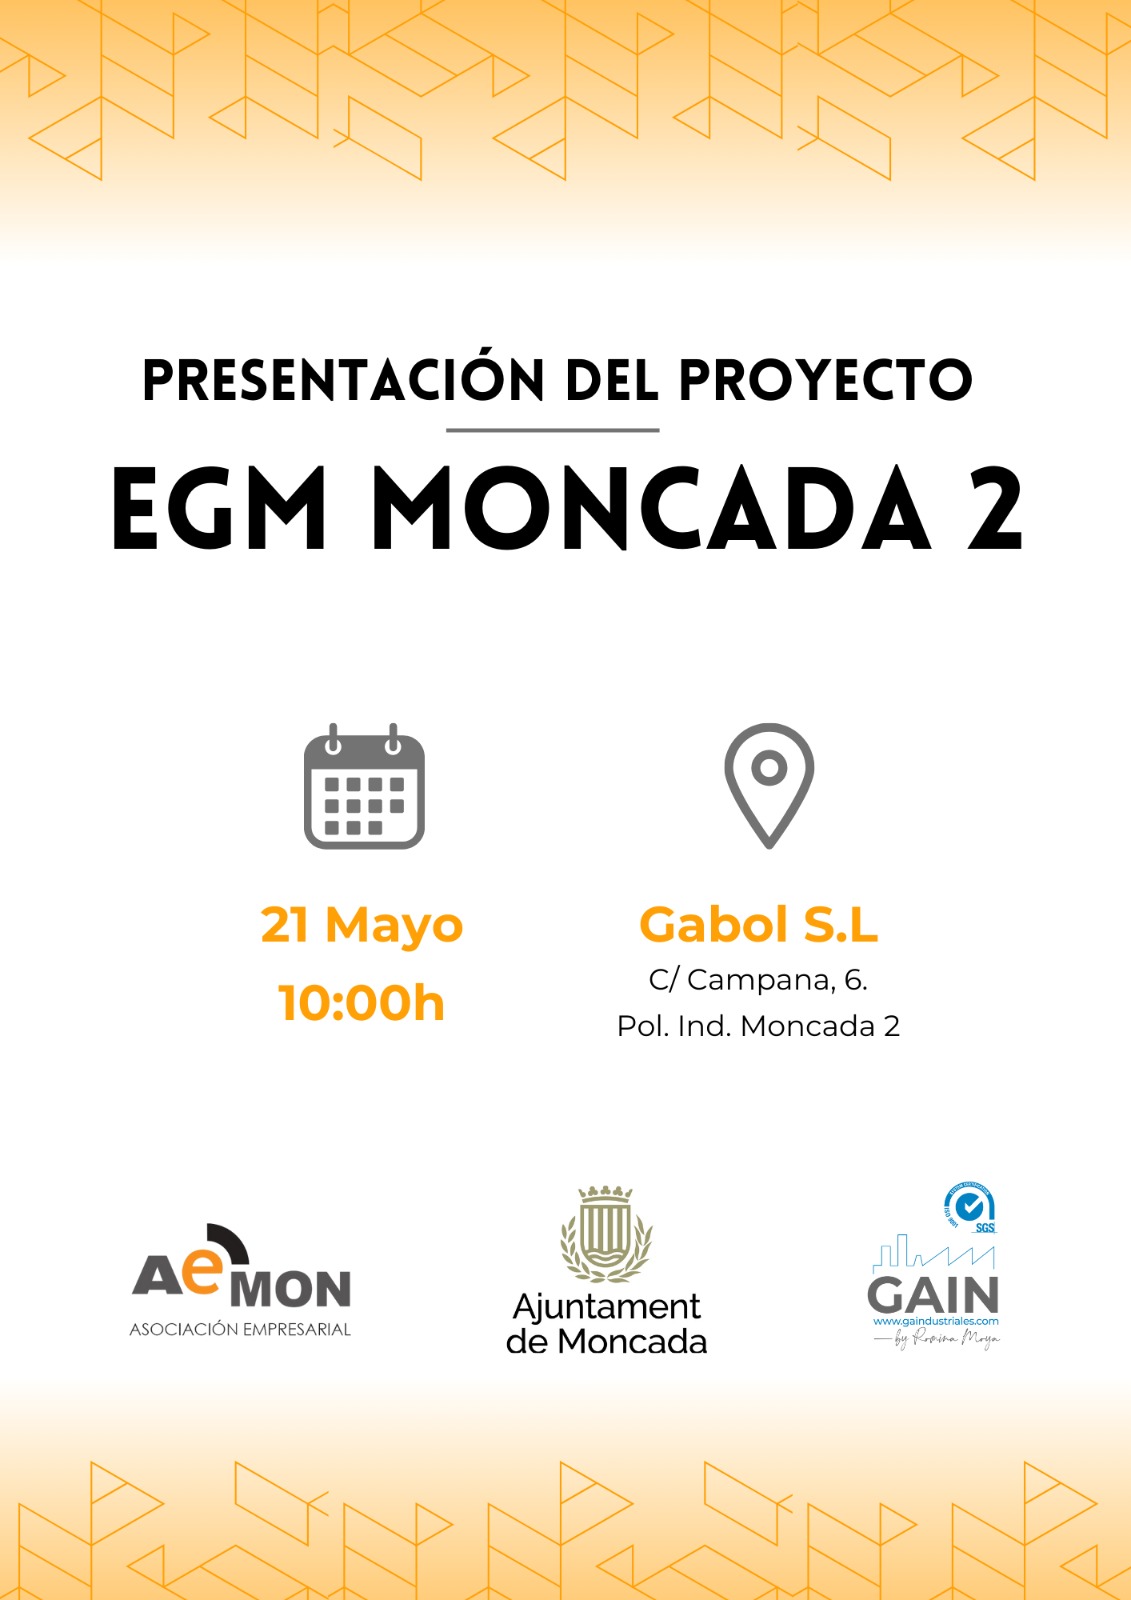 (Español) Presentación del proyecto de EGM Moncada 2